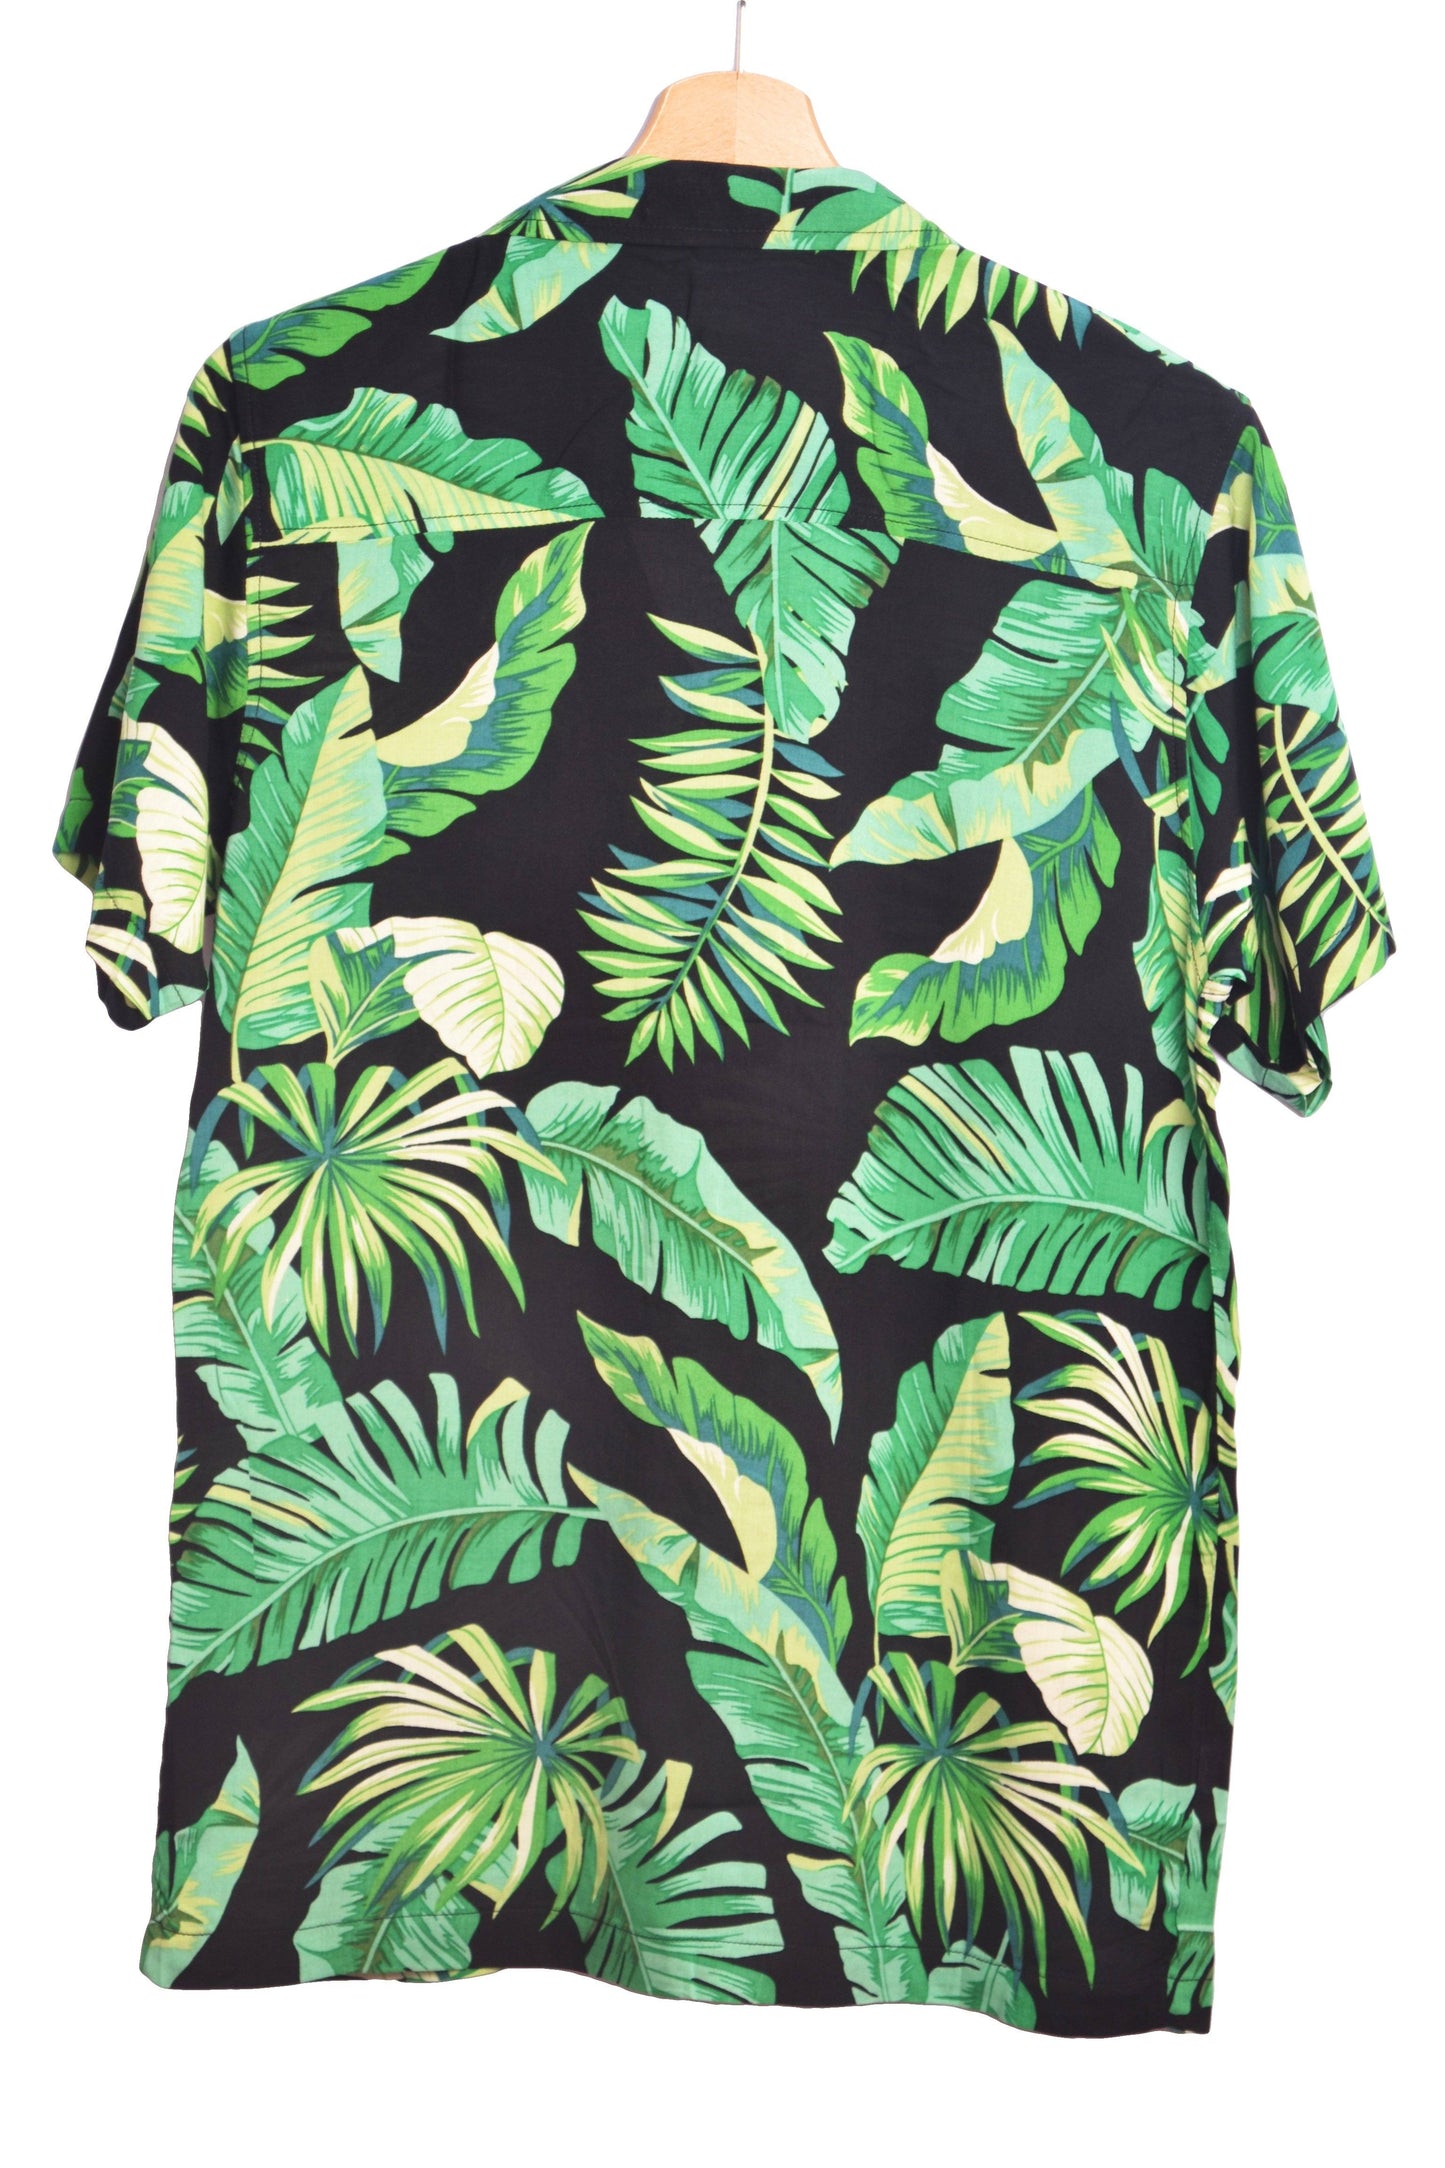 Chemise hawaienne noire pour homme avec imprimé floral vert - Vue dos